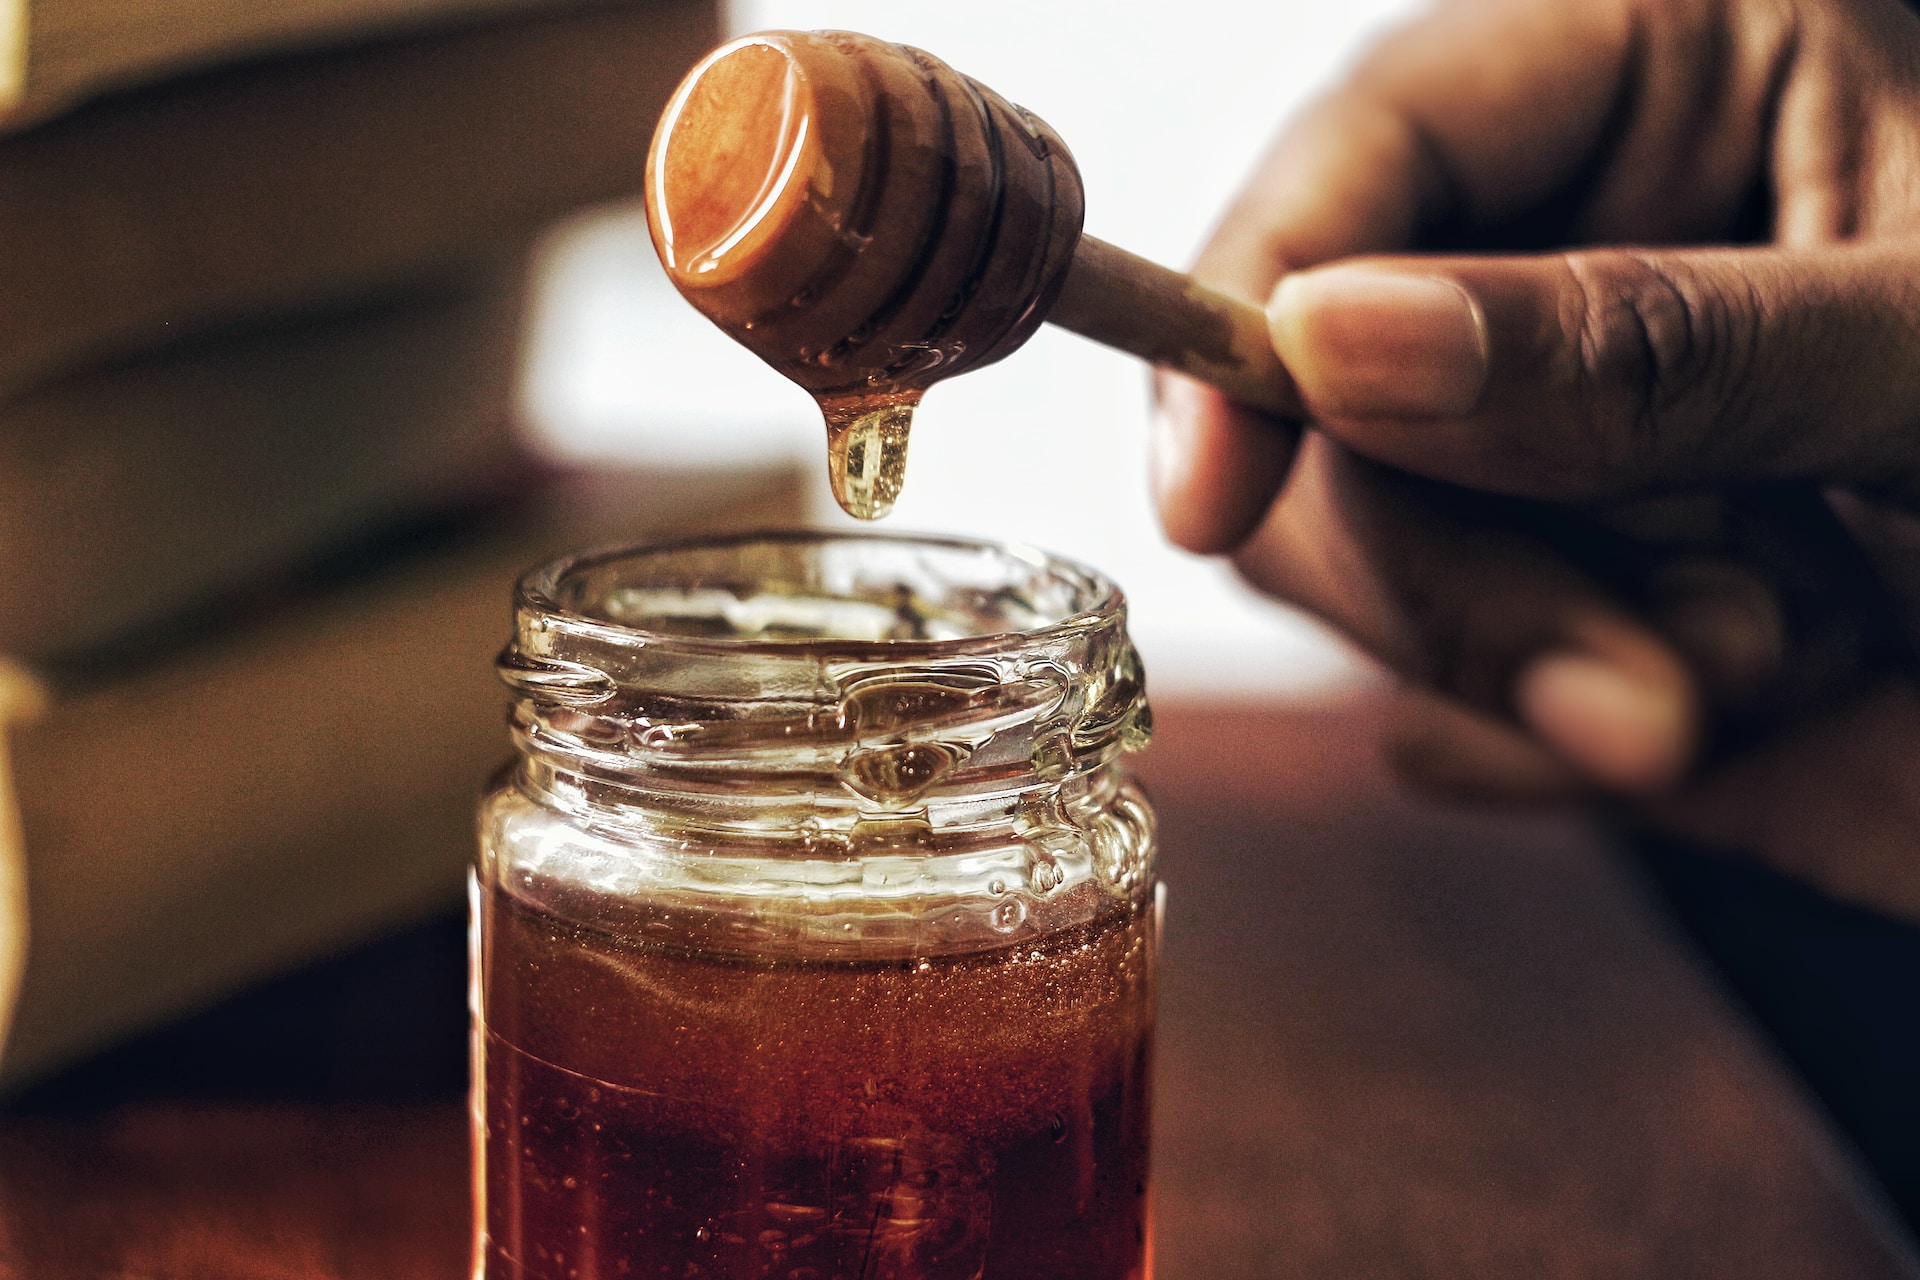 Risoluzioni su come disciogliere la sostanza dolce prodotta dalle api